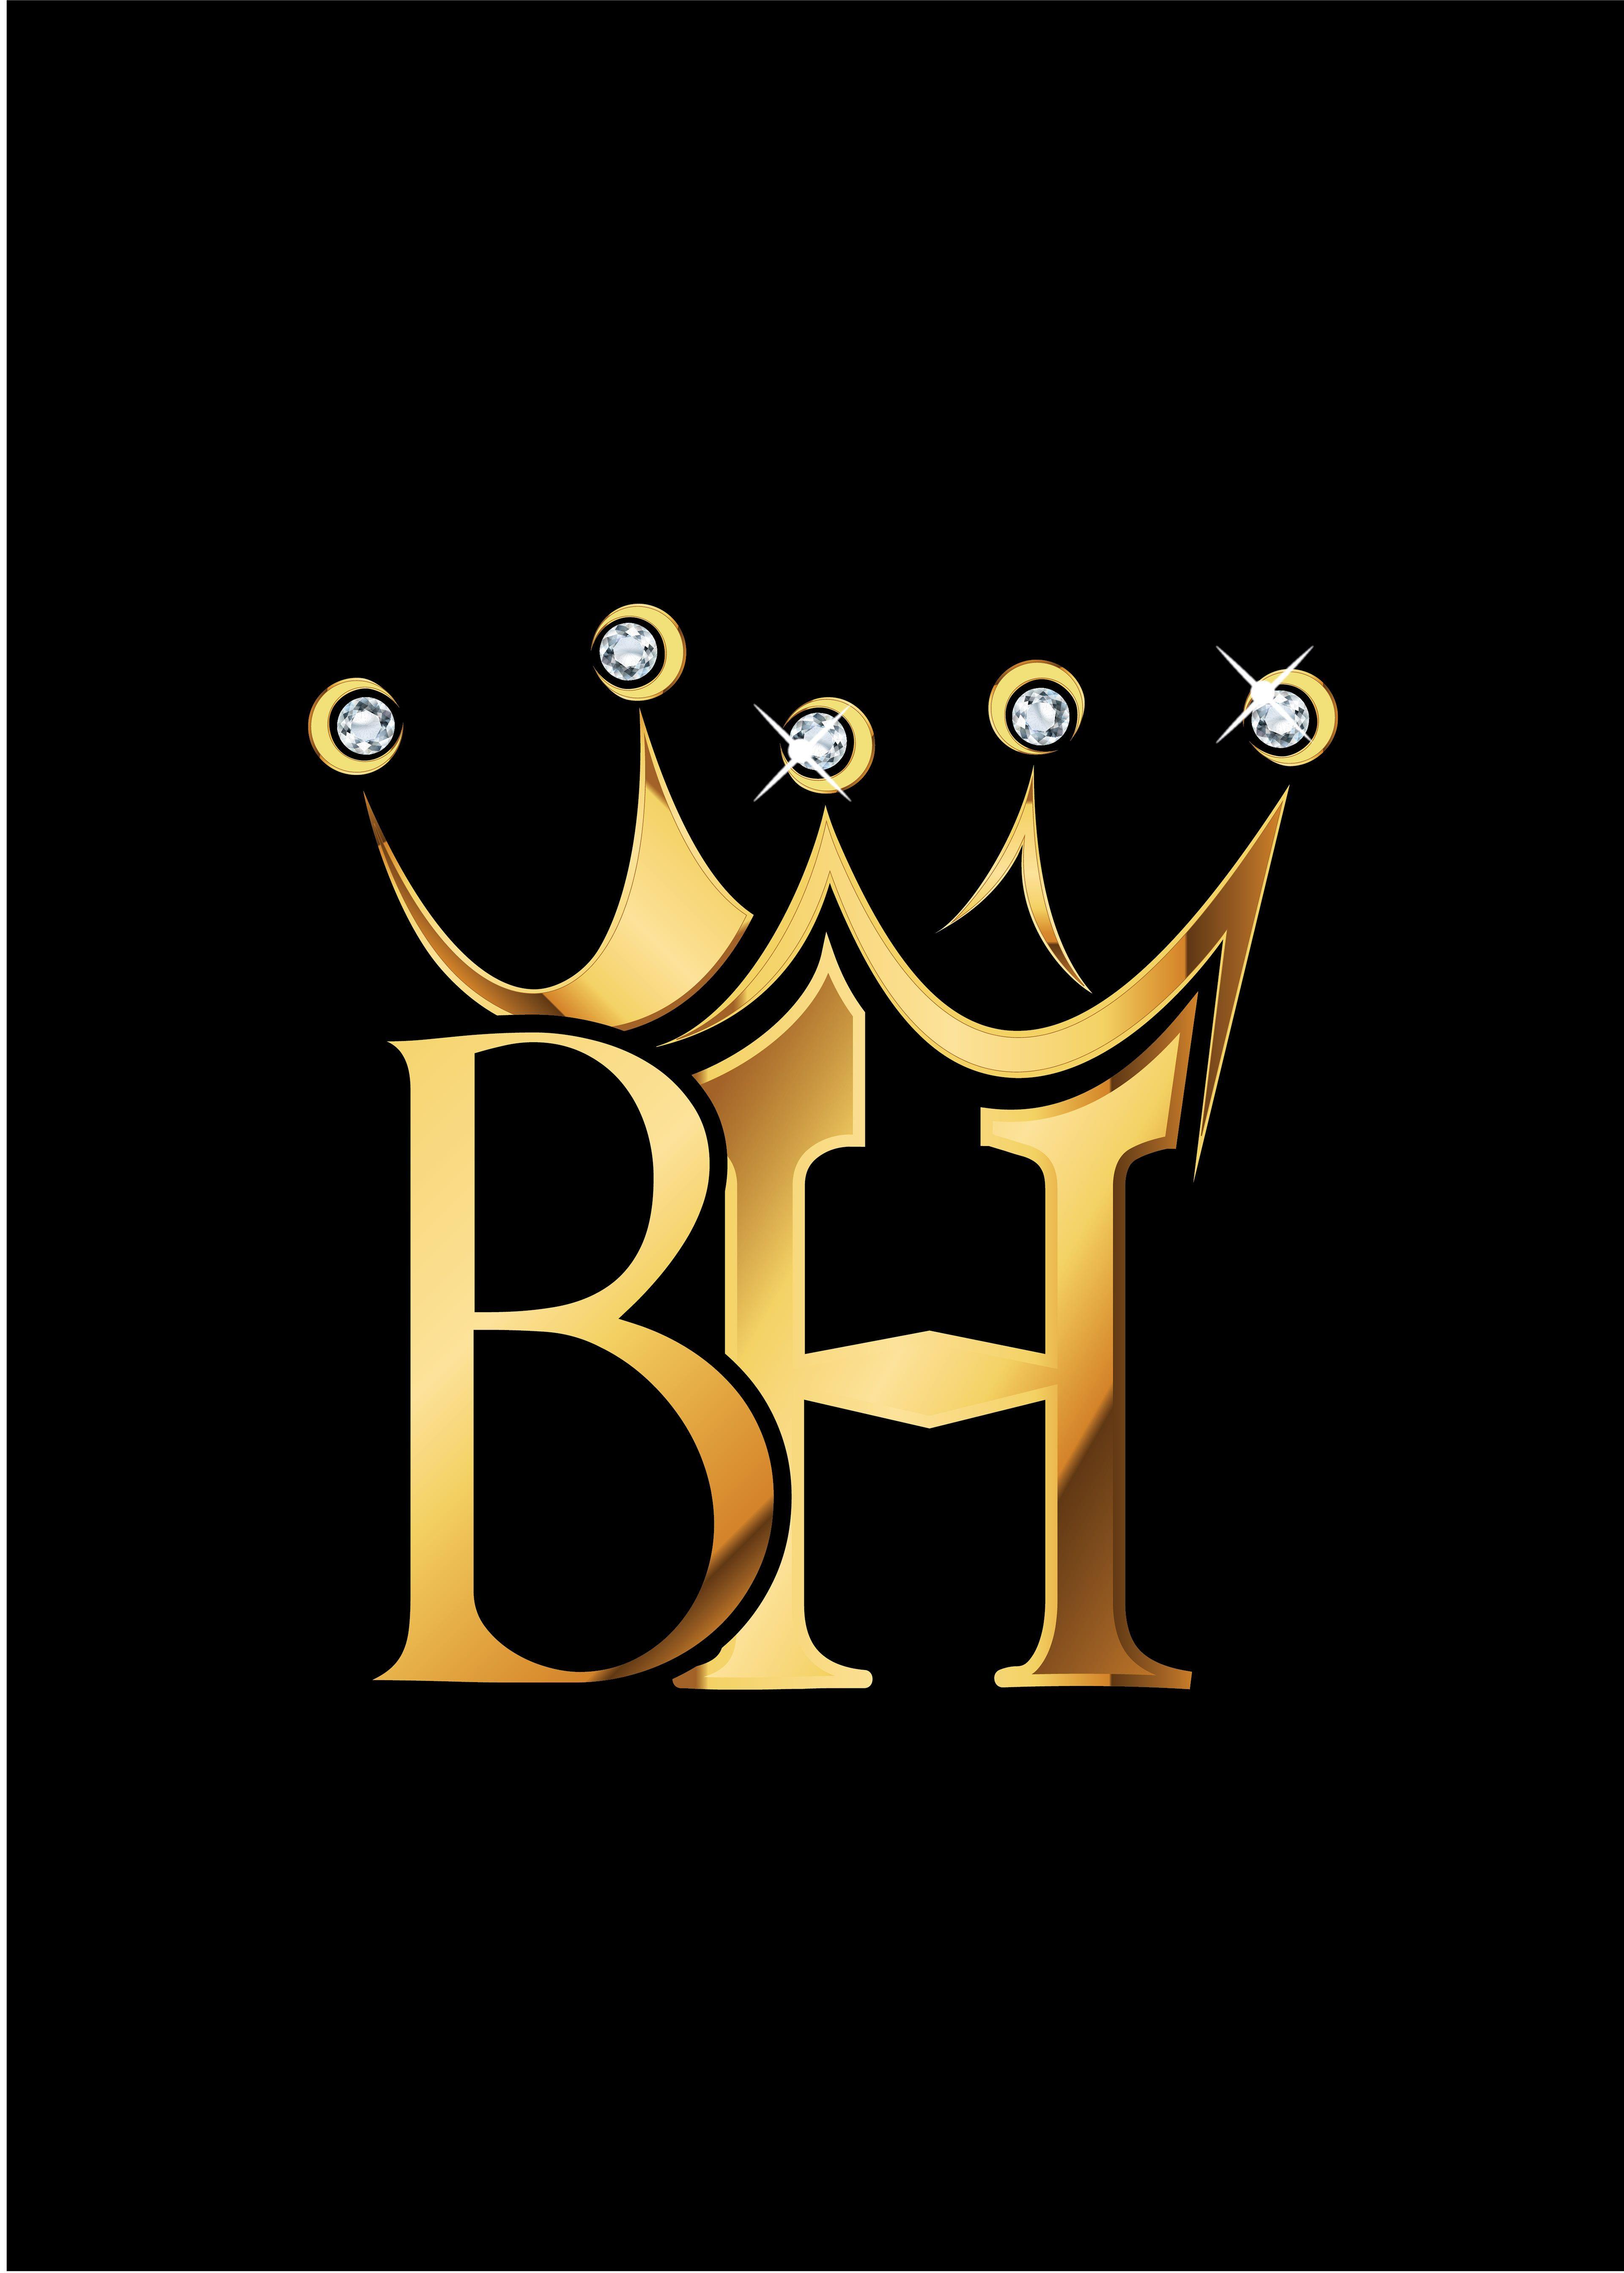 BH Logo - lex gee - BH Financial logo concepts